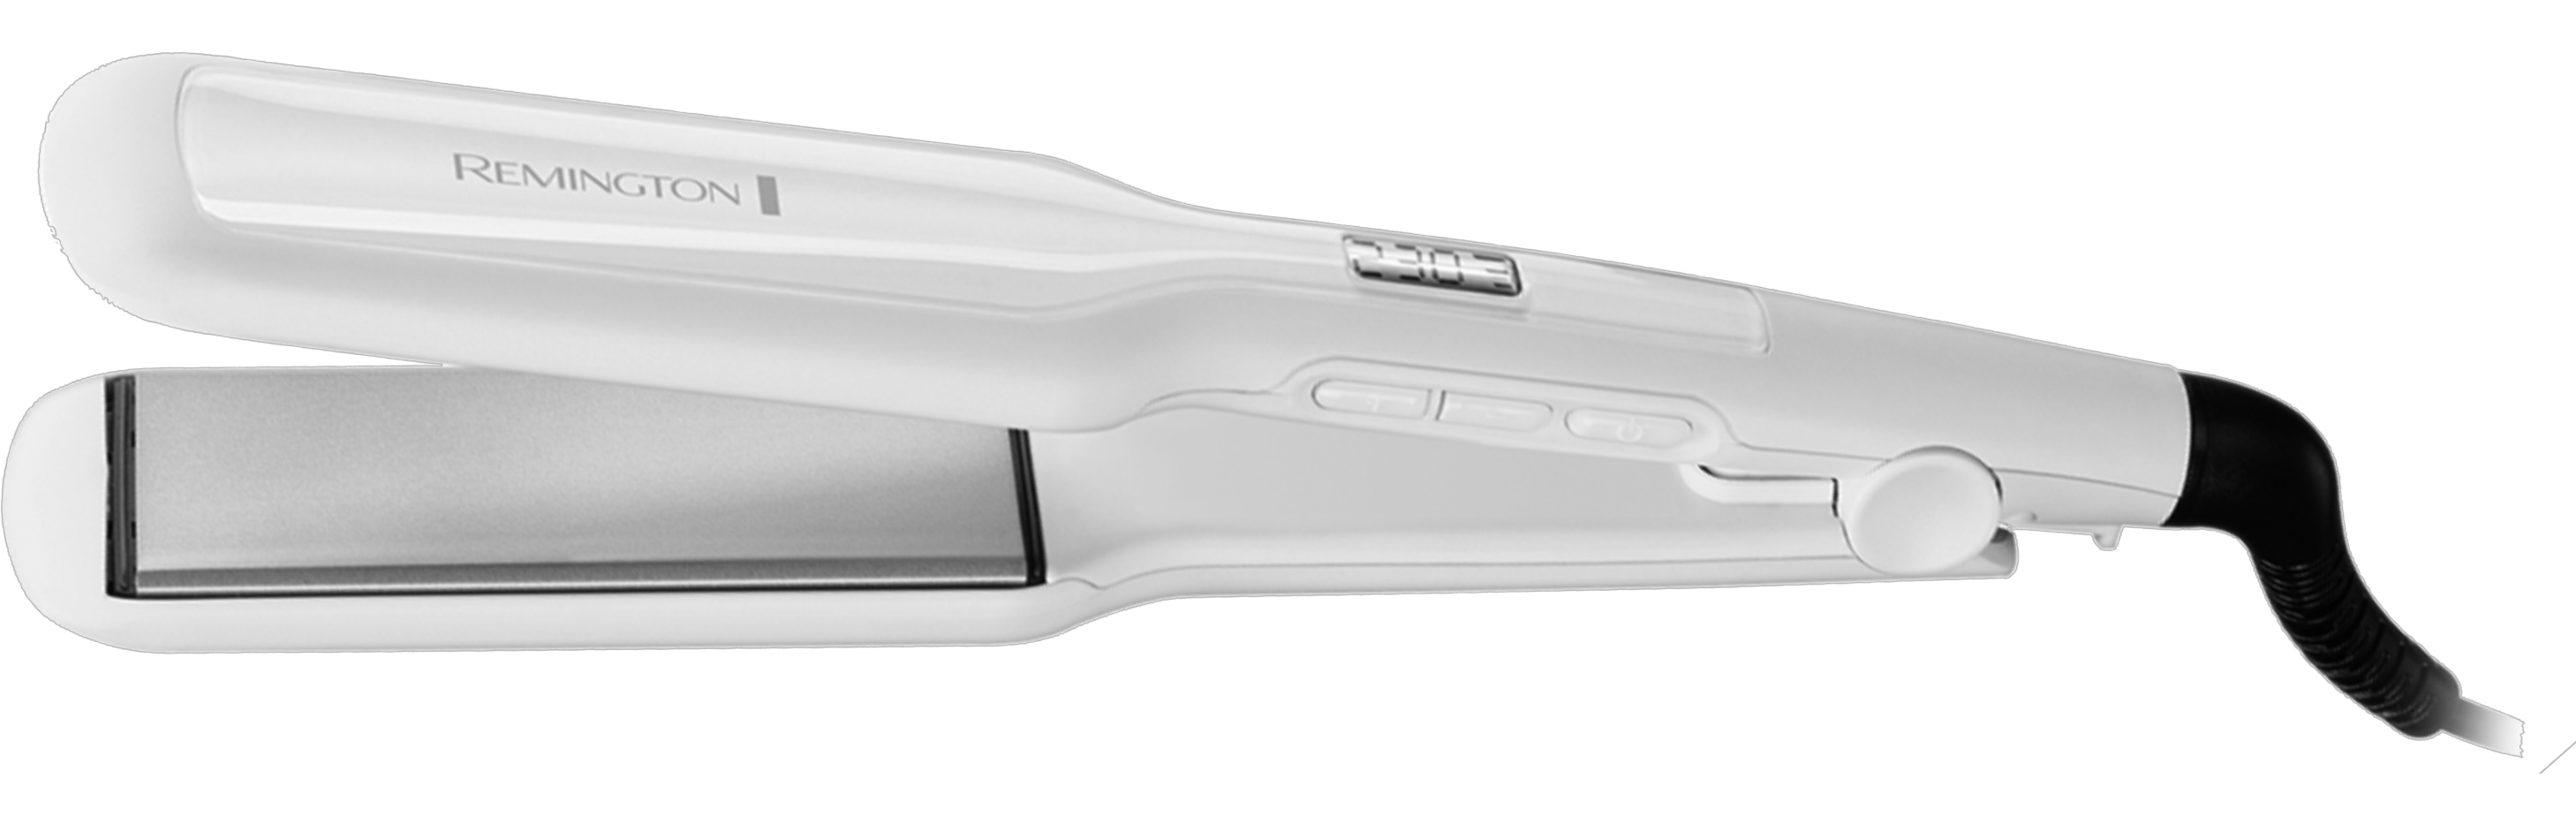 מחליק שיער קרמי רחב Remington S5527 Pro ceramic extra wide  - צבע לבן אחריות ע"י היבואן הרשמי 